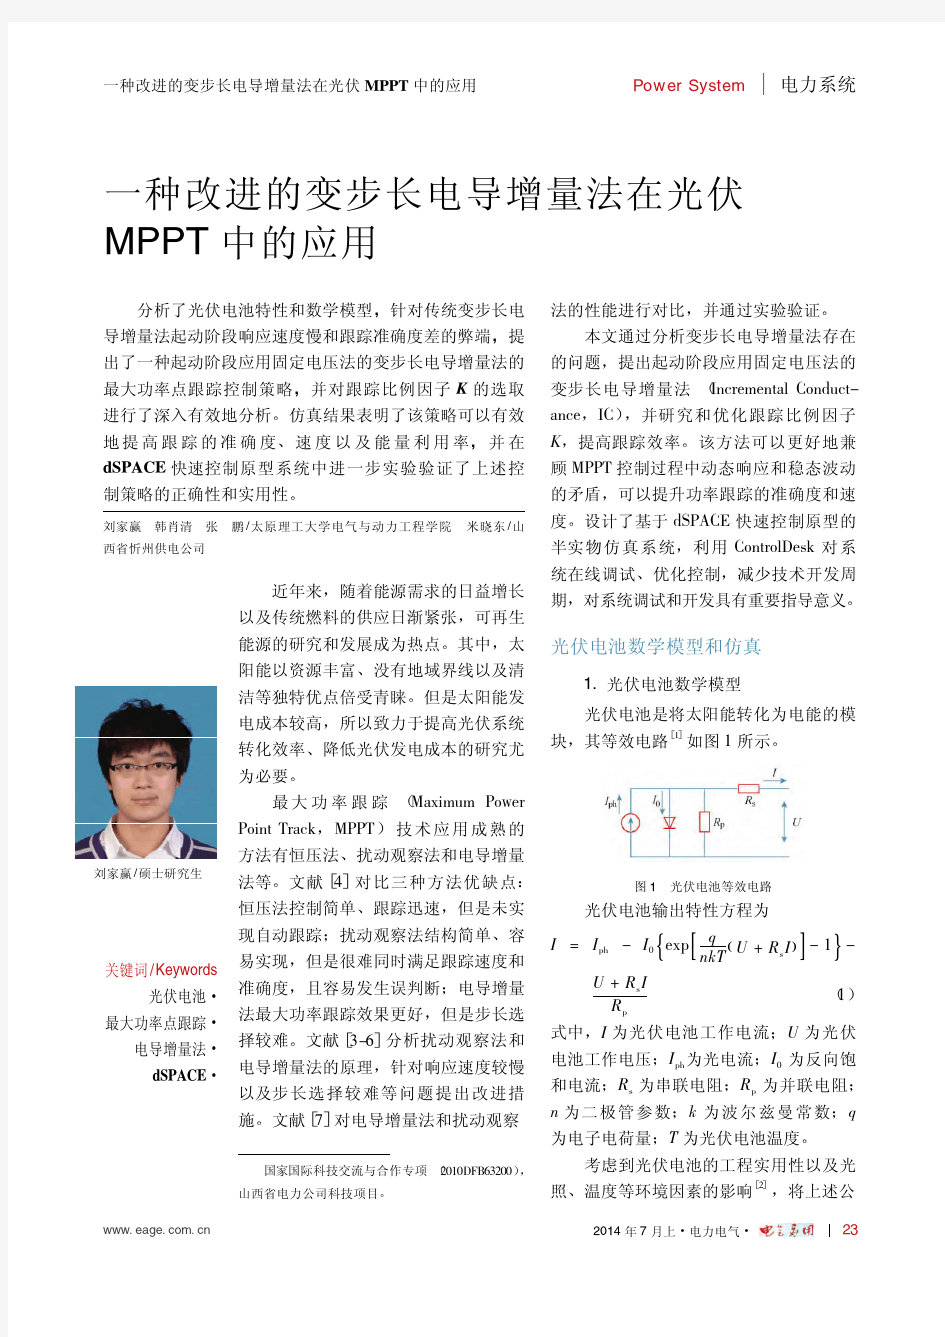 一种改进的变步长电导增量法在光伏MPPT中的应用_刘家赢